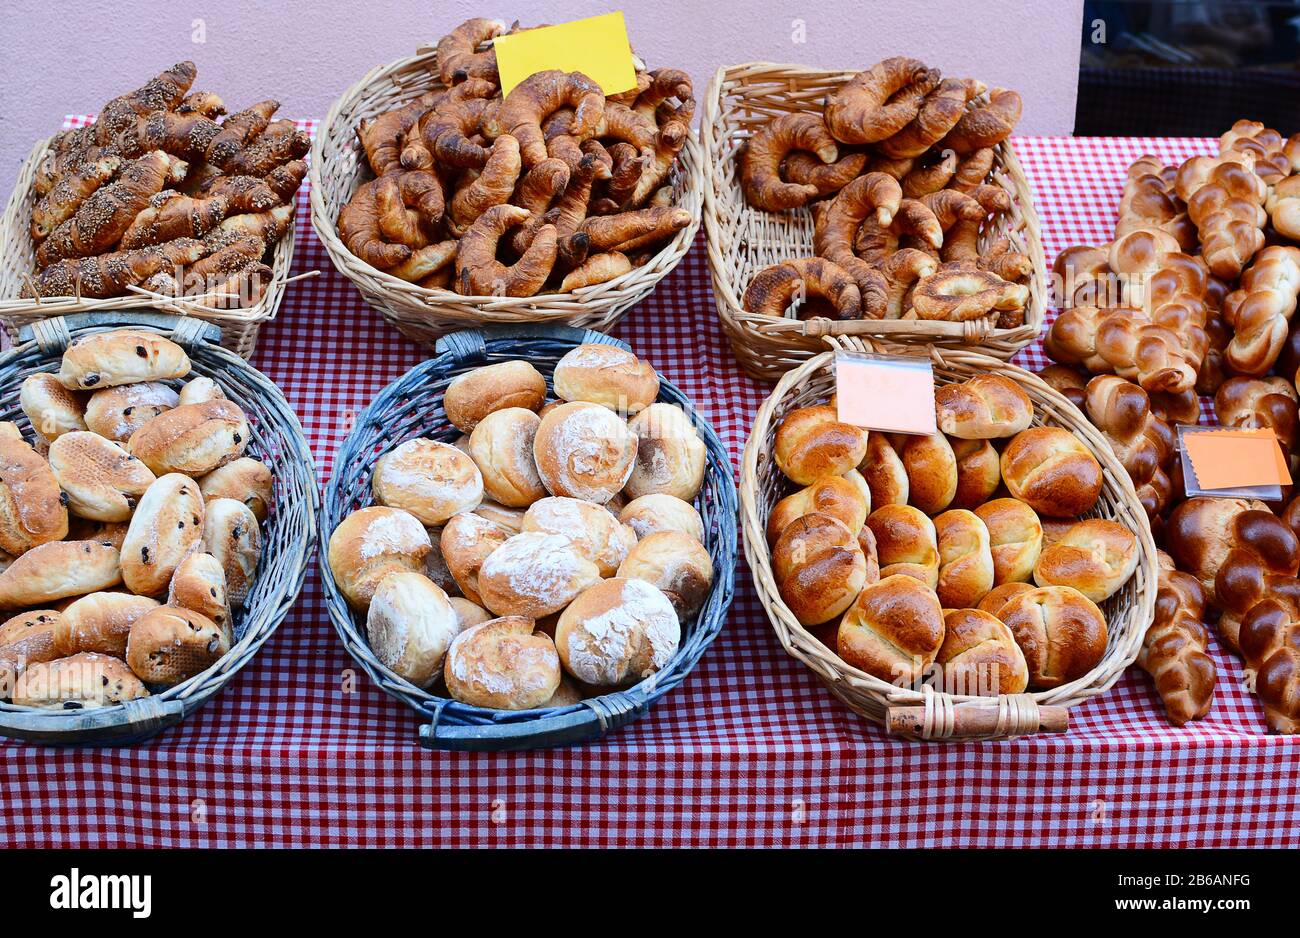 Surtido de panes y pasteles en un mercado de granjeros al aire libre en Suiza. Foto de stock